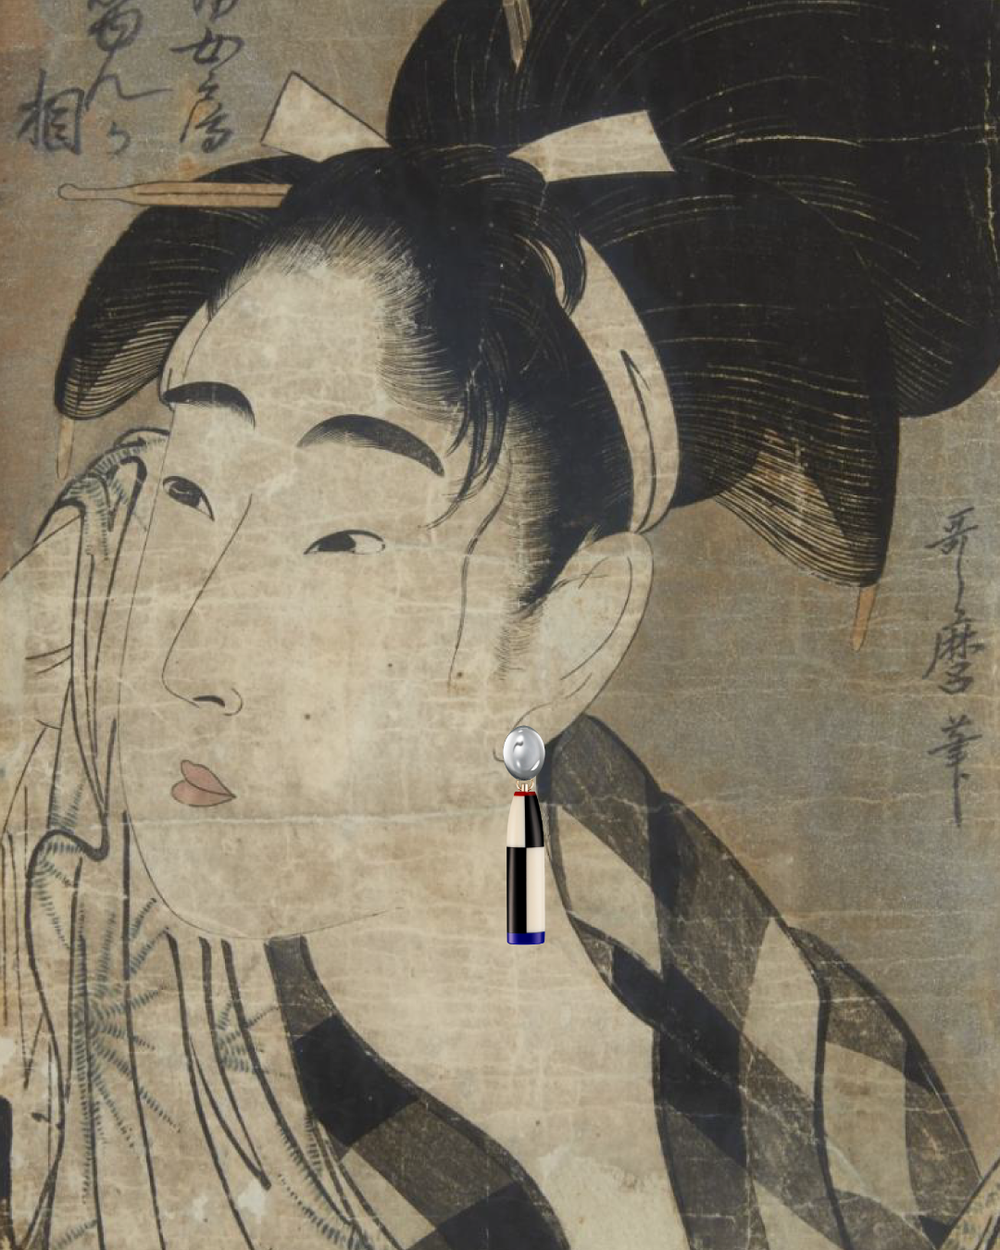 Art-time-traveling-Utamaro-1798.png